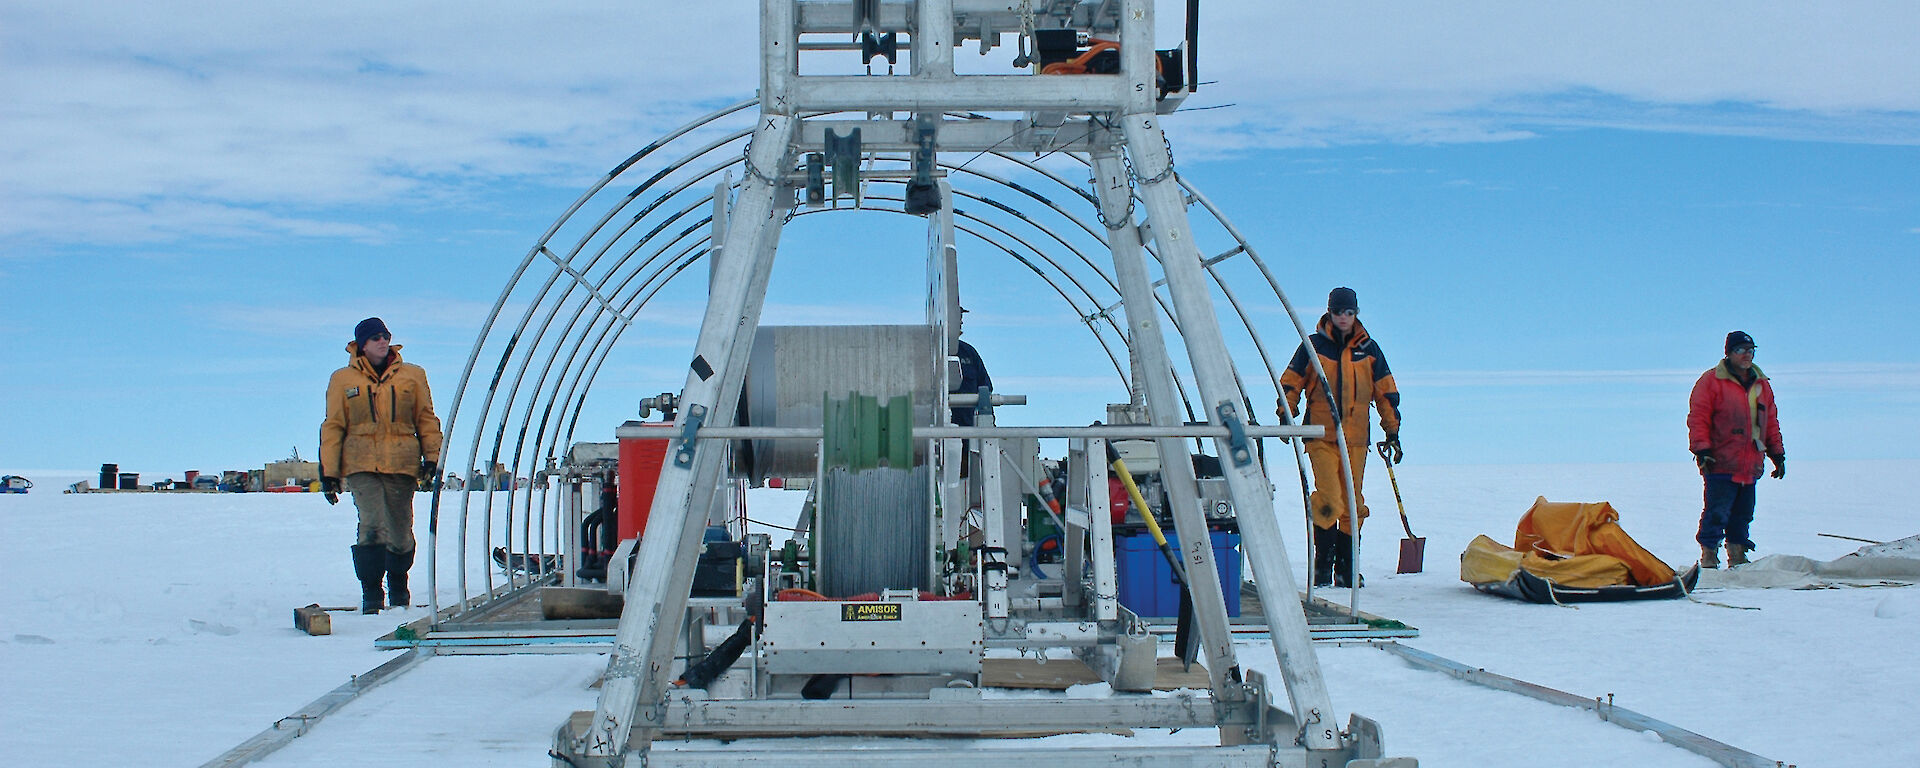 AMISOR hot water drilling program on Amery Ice Shelf